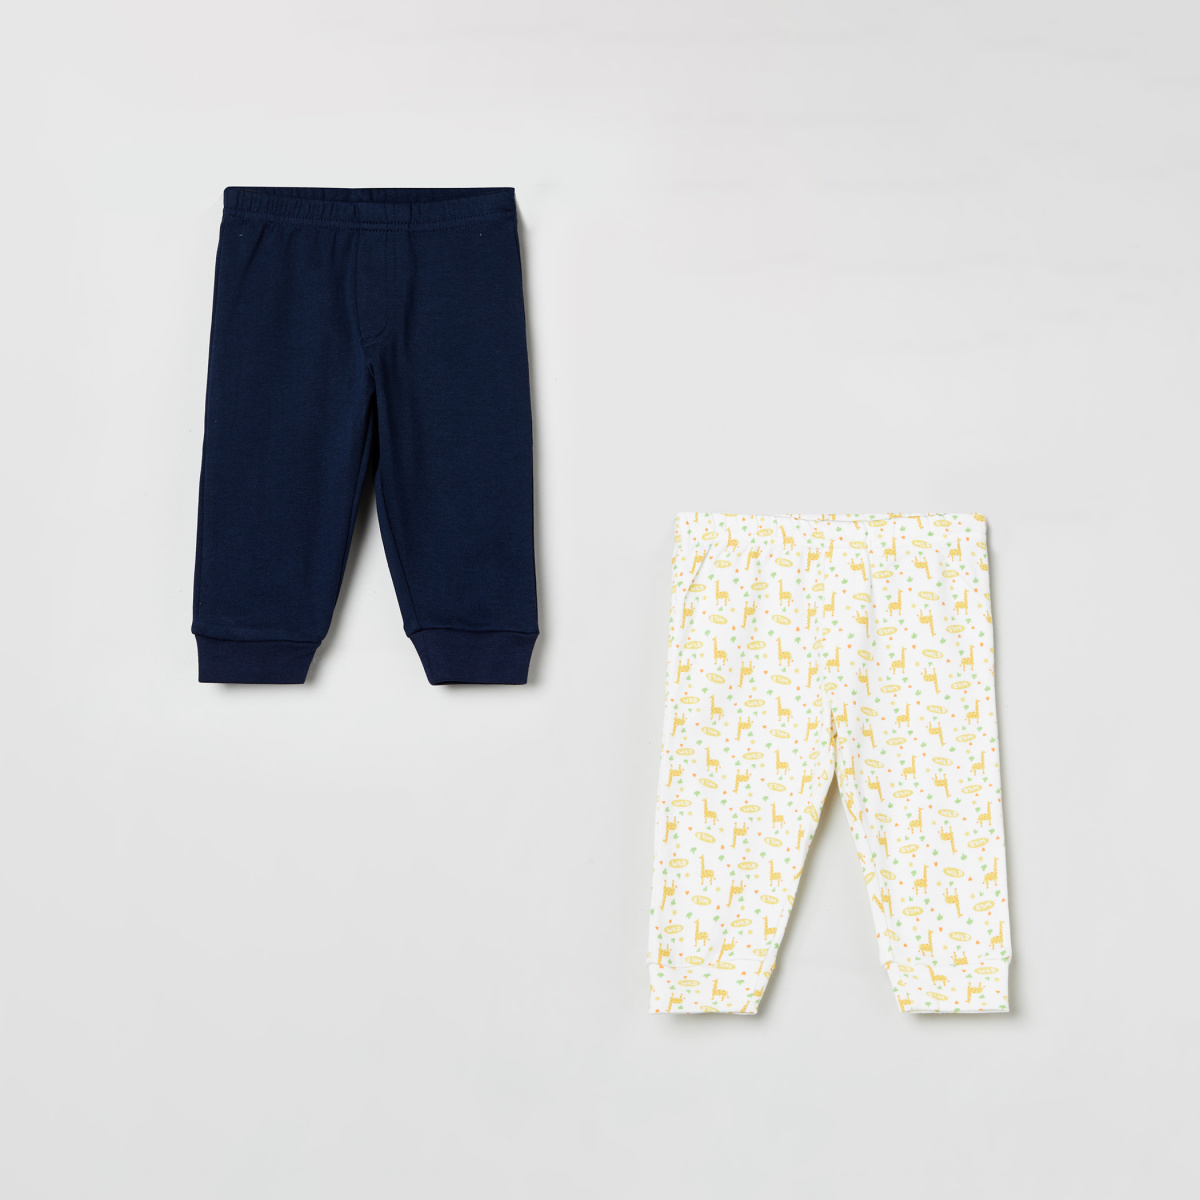 MAX Printed Elasticated Pyjama - Set of 2 Pcs